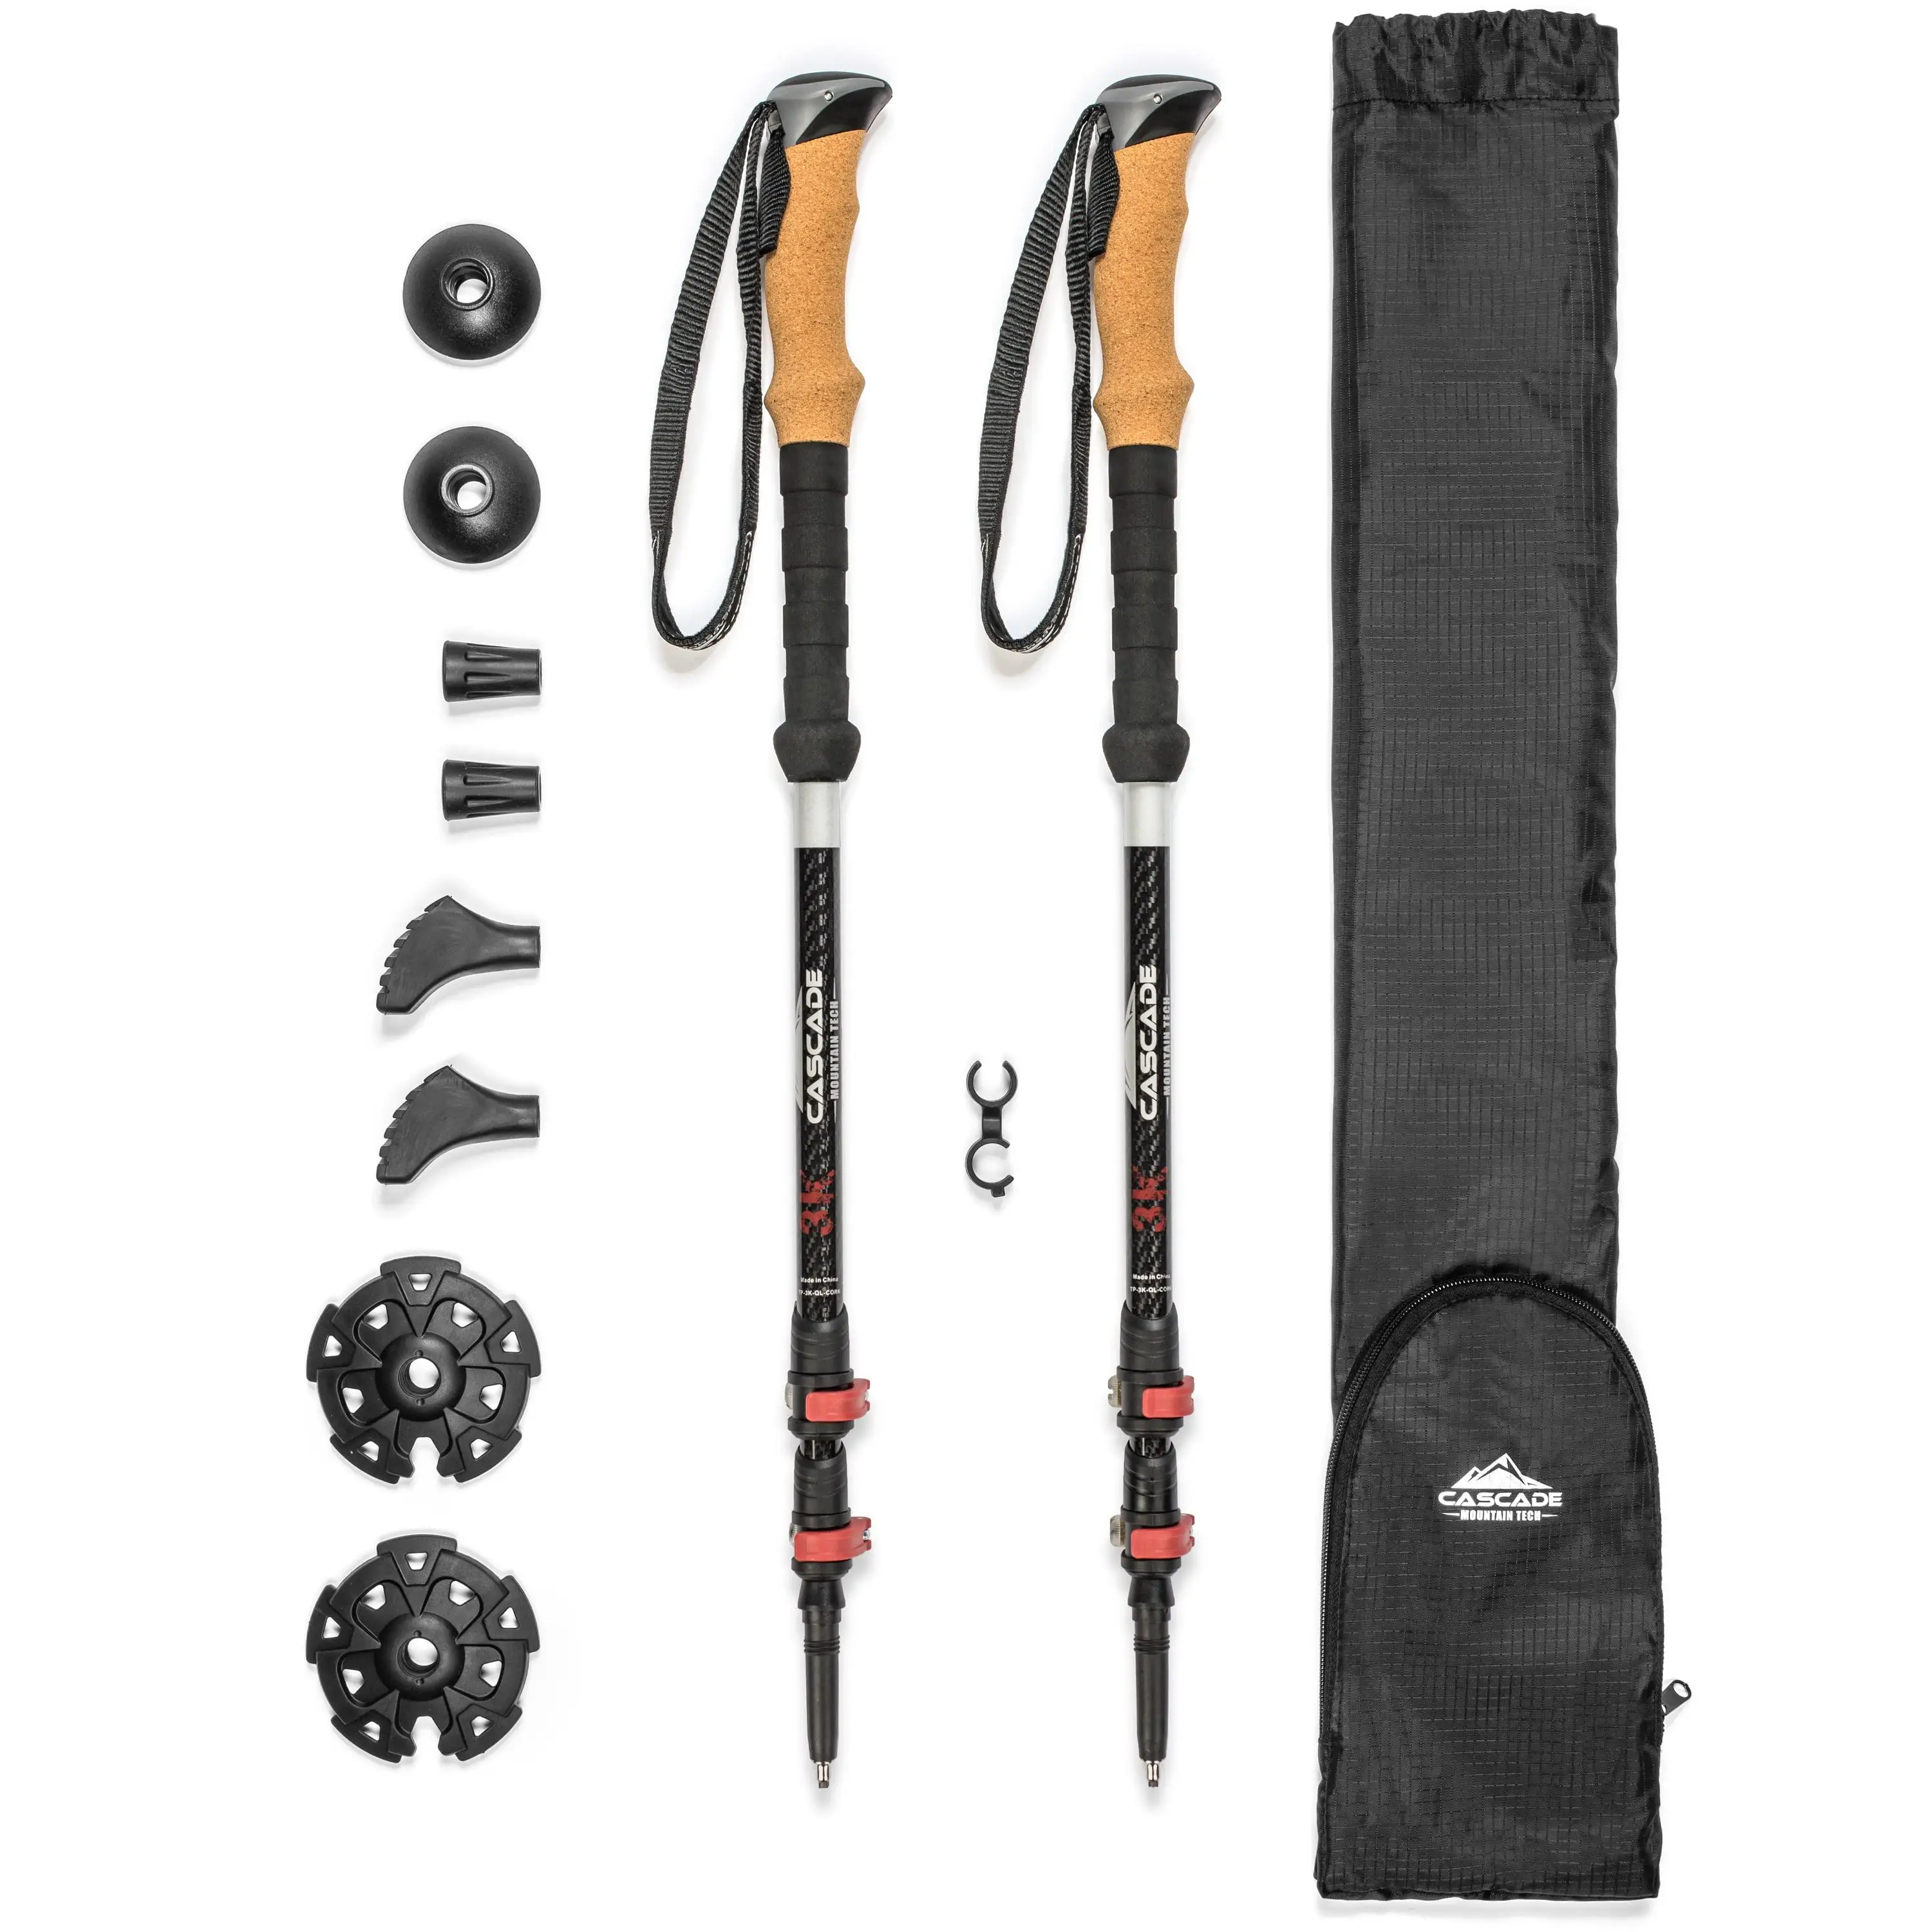 

Mountain Tech 3K Carbon Fiber Quick Lock Cork Grip Trekking Poles - Collapsible Walking or Hiking Stick